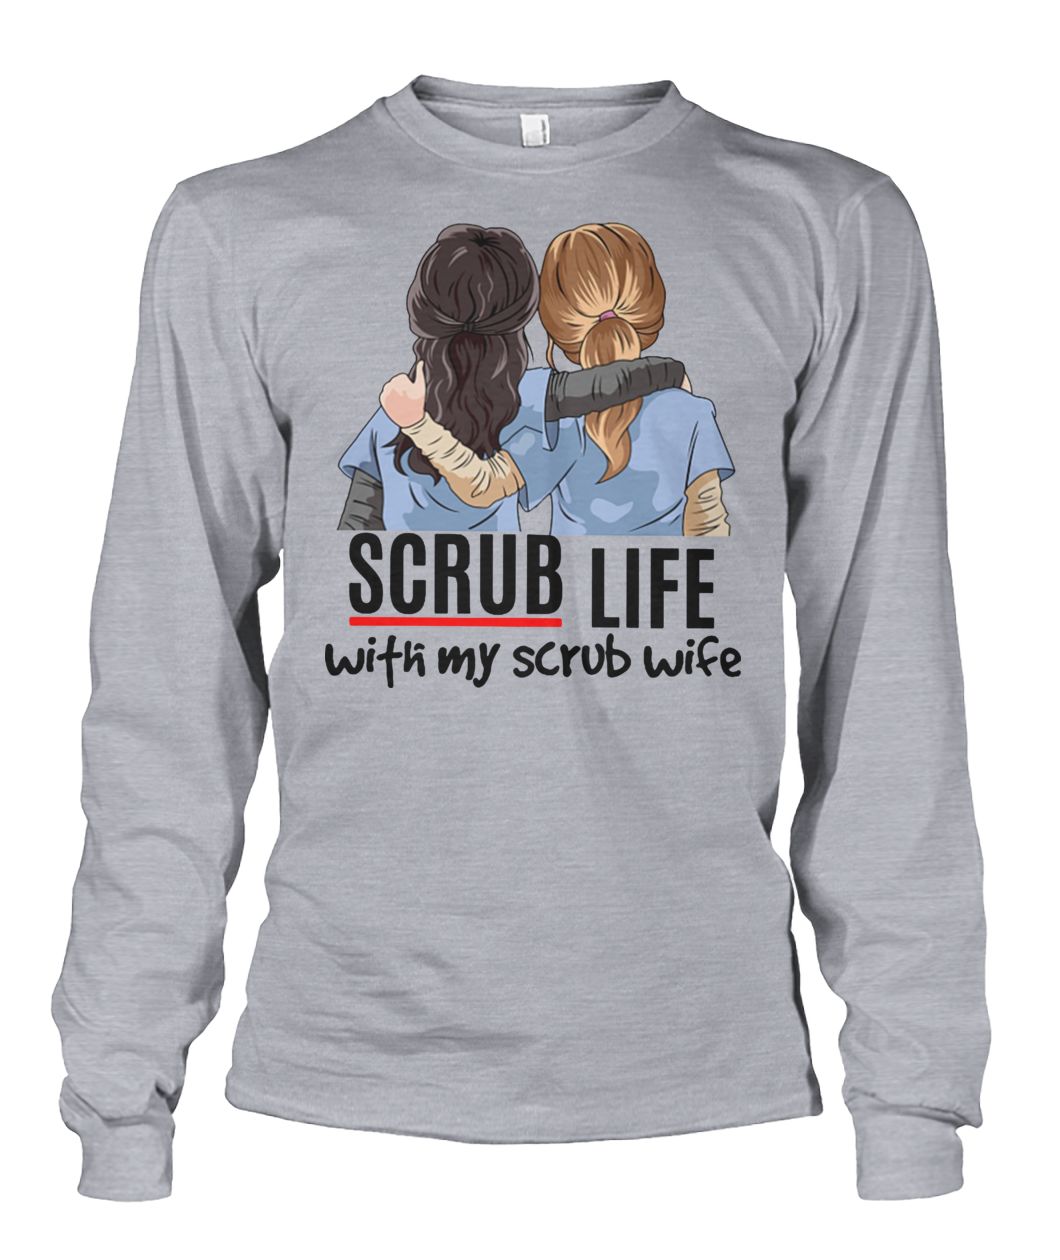 Nurse scrub life with my scrub wife unisex long sleeve